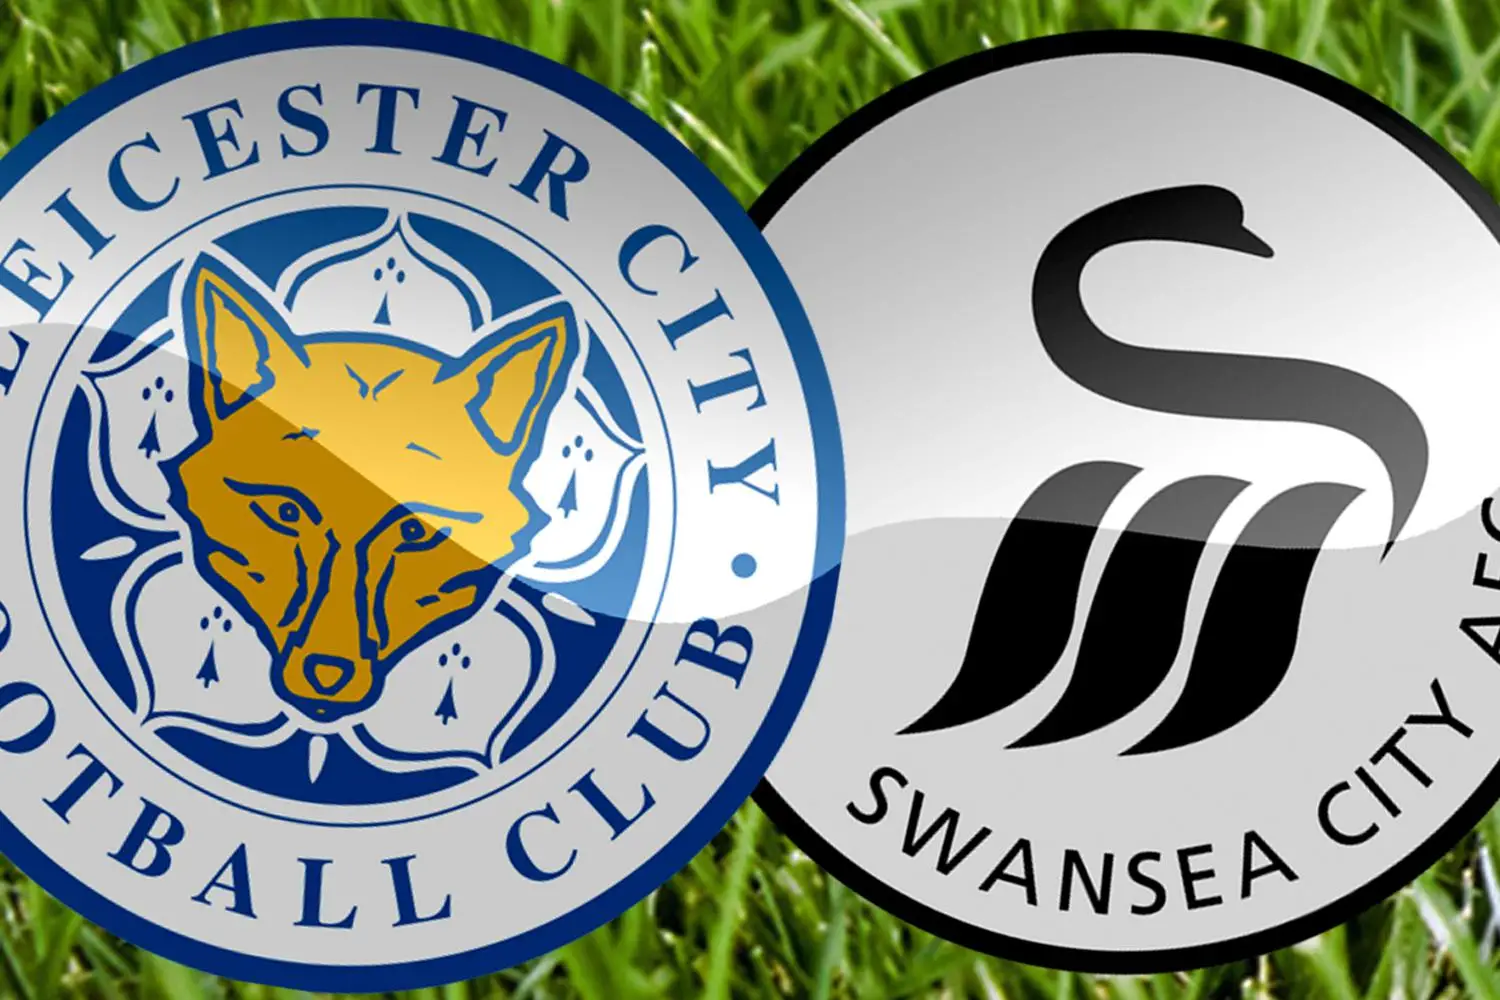 Leicester đối đầu Swansea - Nhà cái soi kèo, dự đoán tỉ số và đội hình ra sân